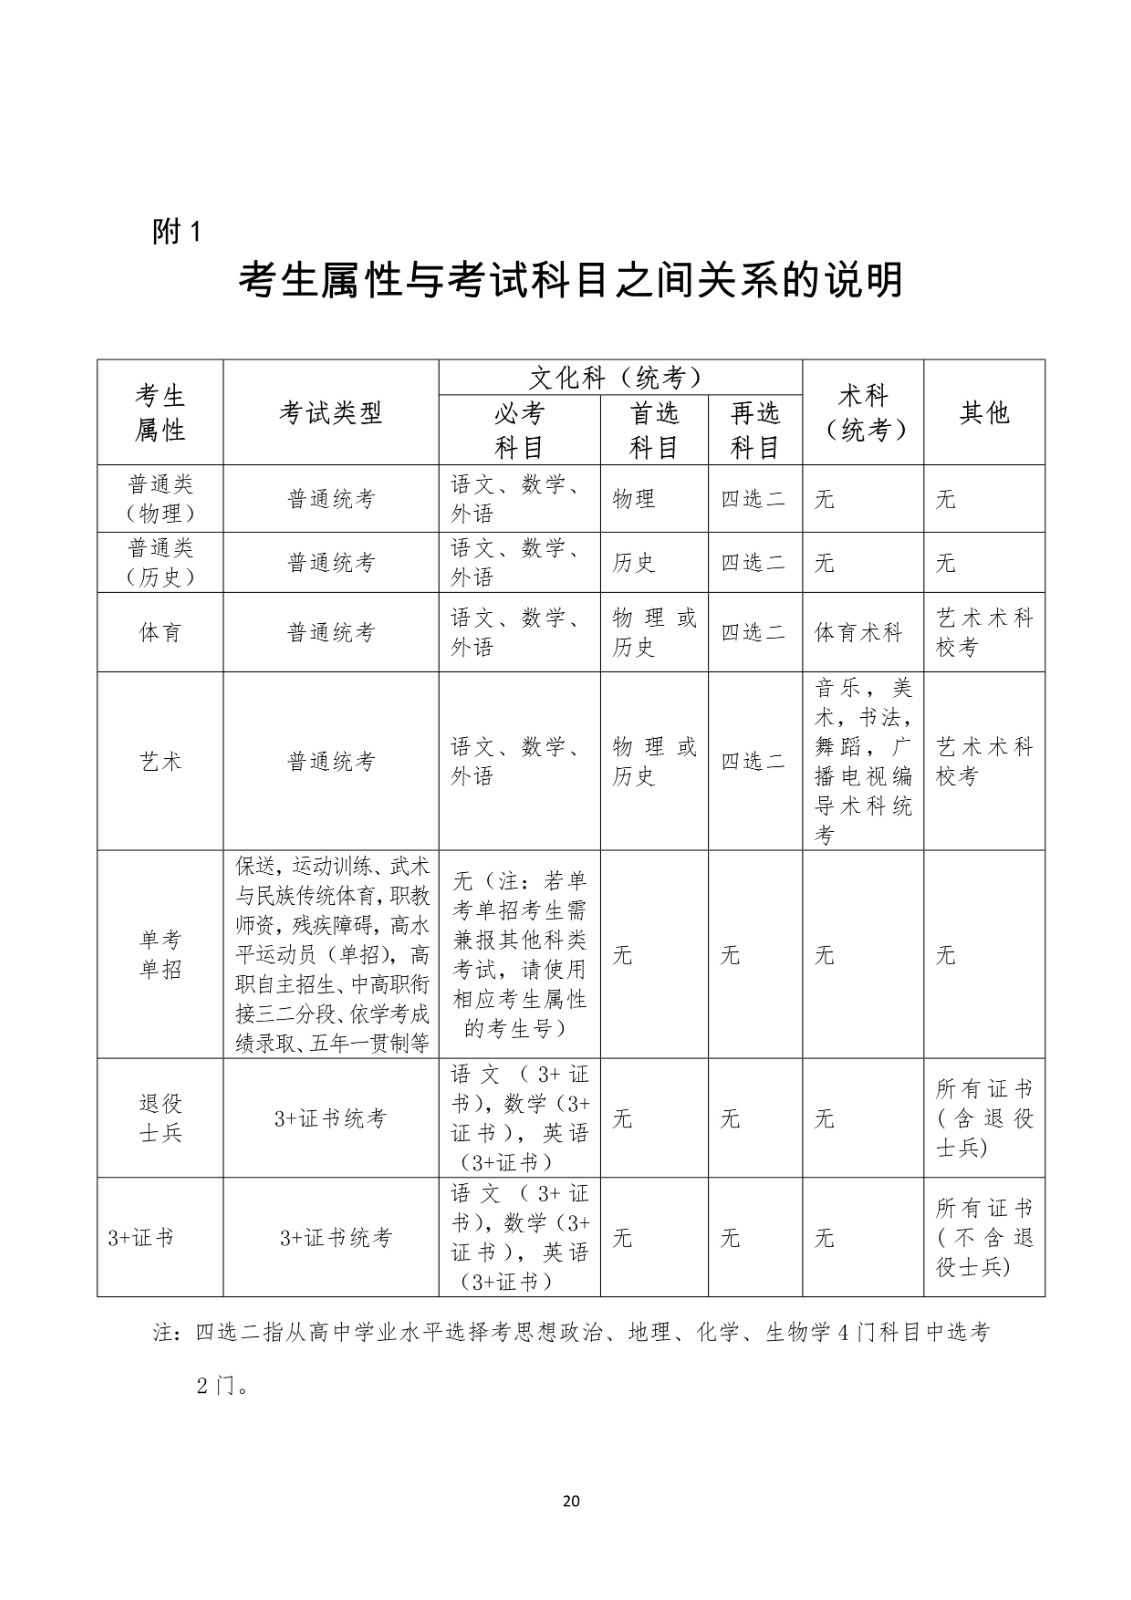 2021年广东省普通高校招生统一考试报名工作规定